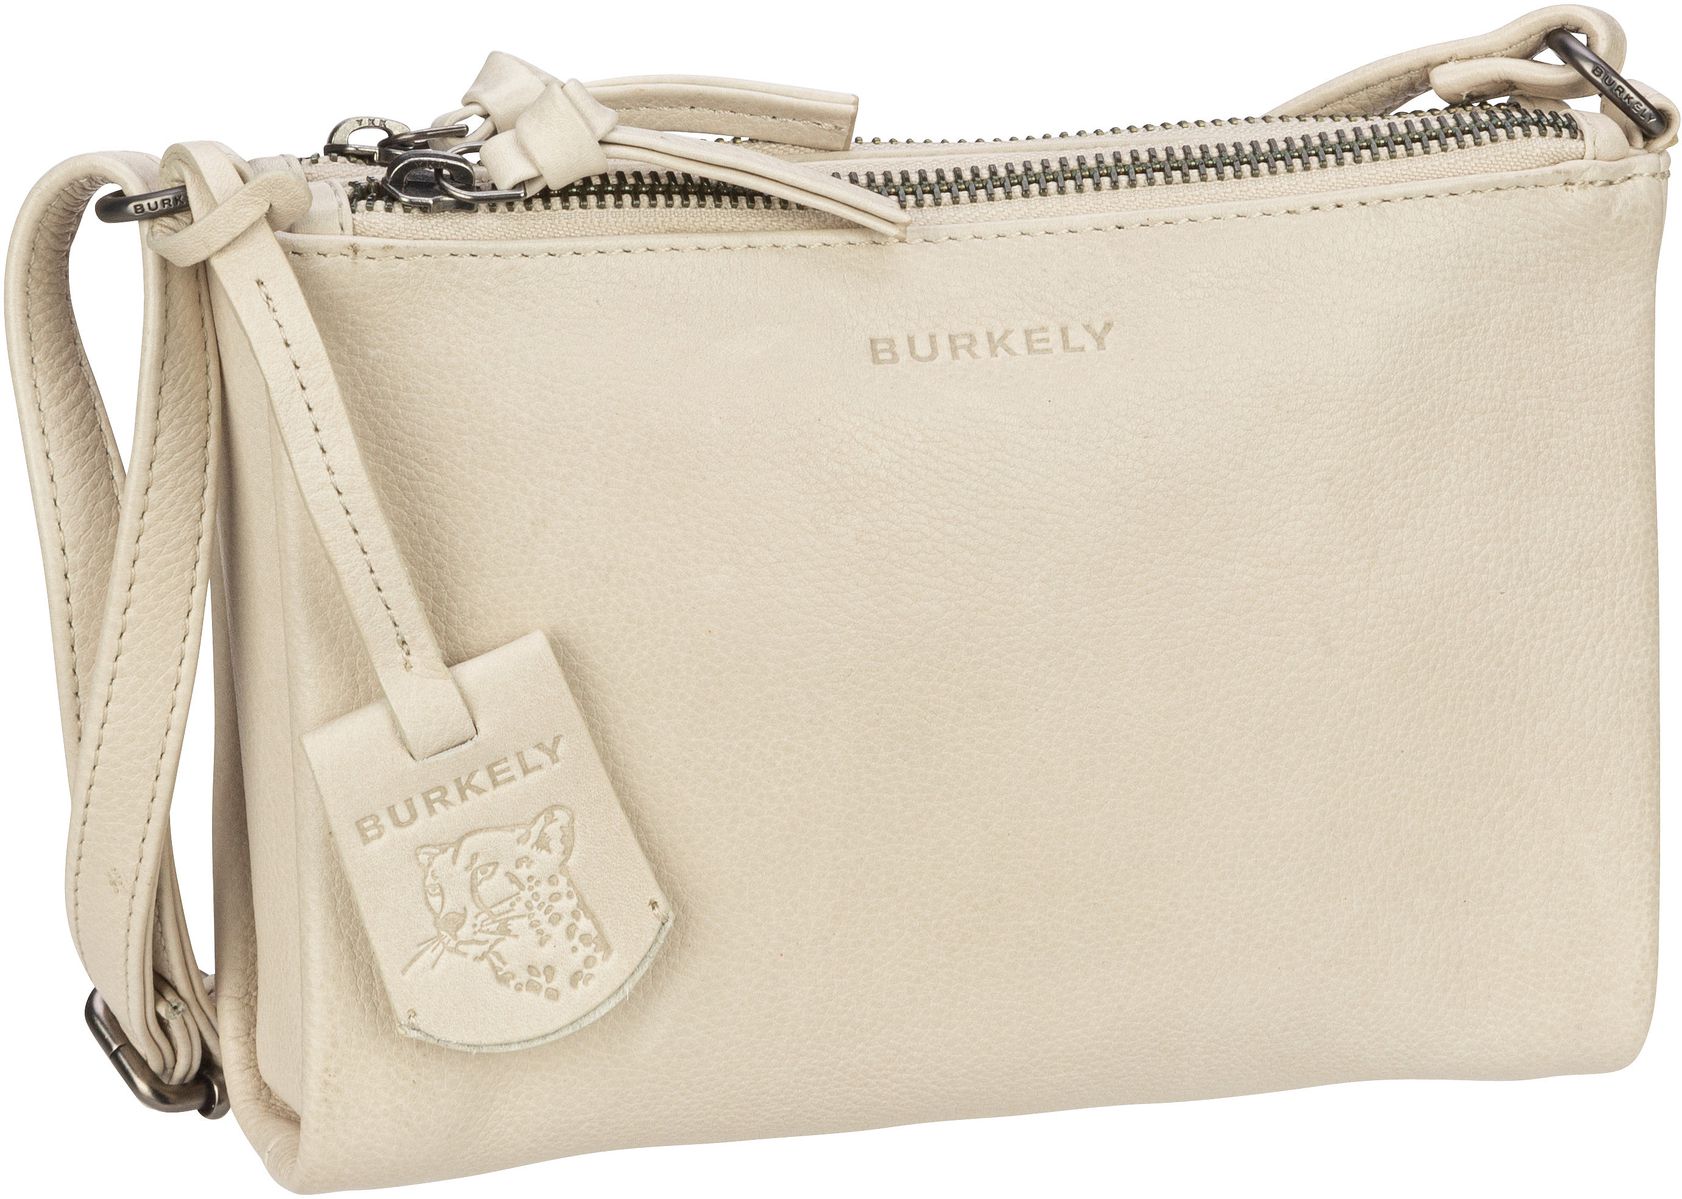 Burkely  Just Jolie Double Zip Crossbody Bag - Umhängetasche klein - Weiß (Off White)